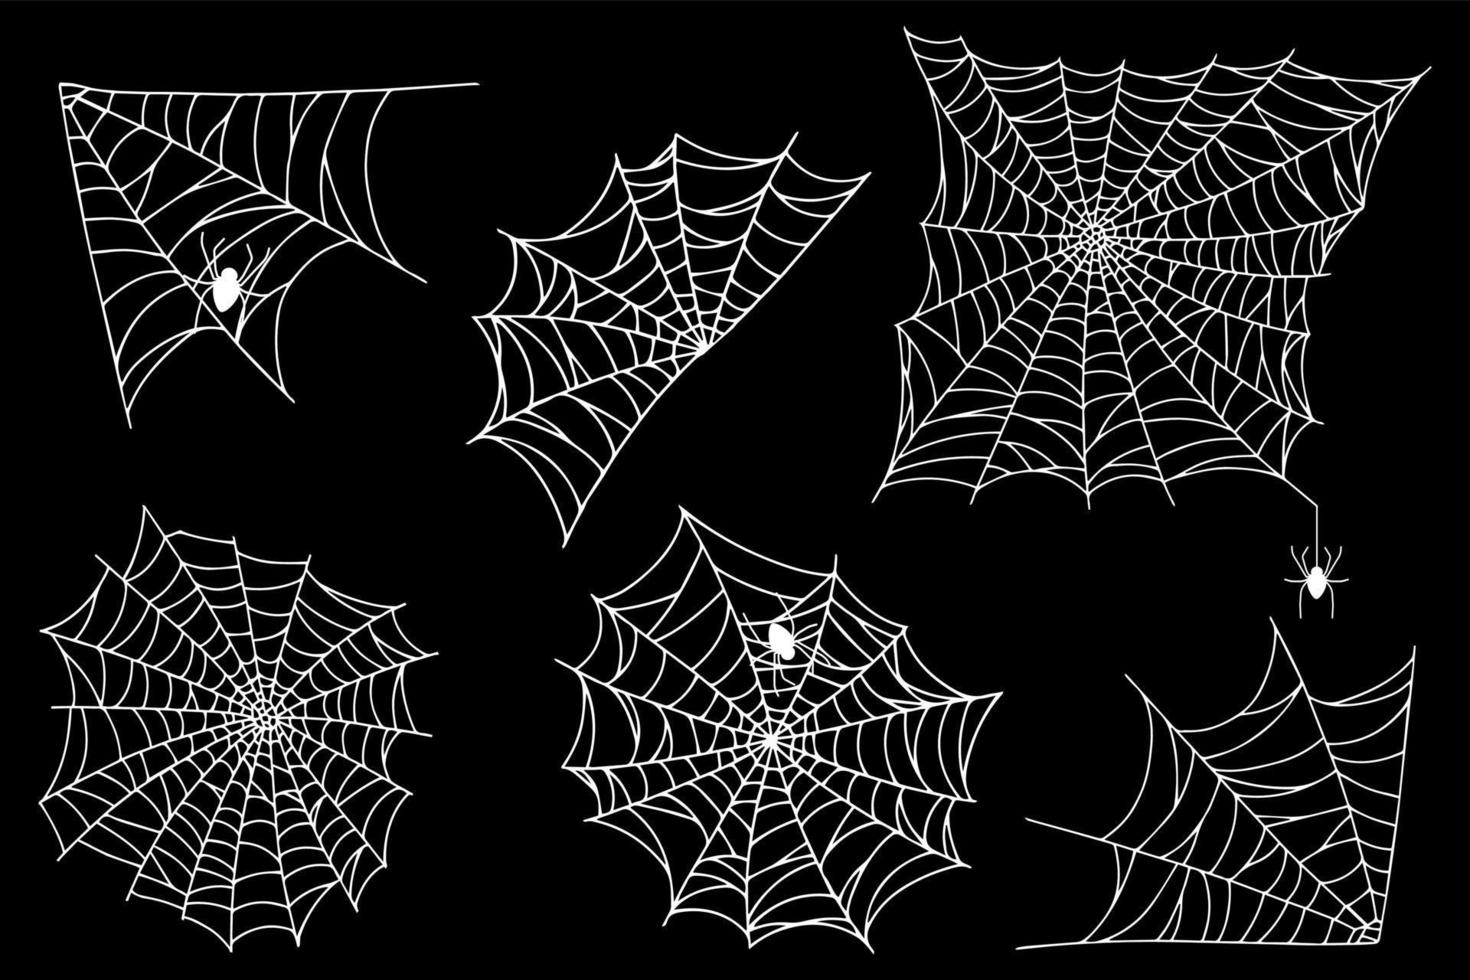 ange spindelnät isolerad på svart bakgrund. läskiga halloween spindelnät med spindlar. vektor